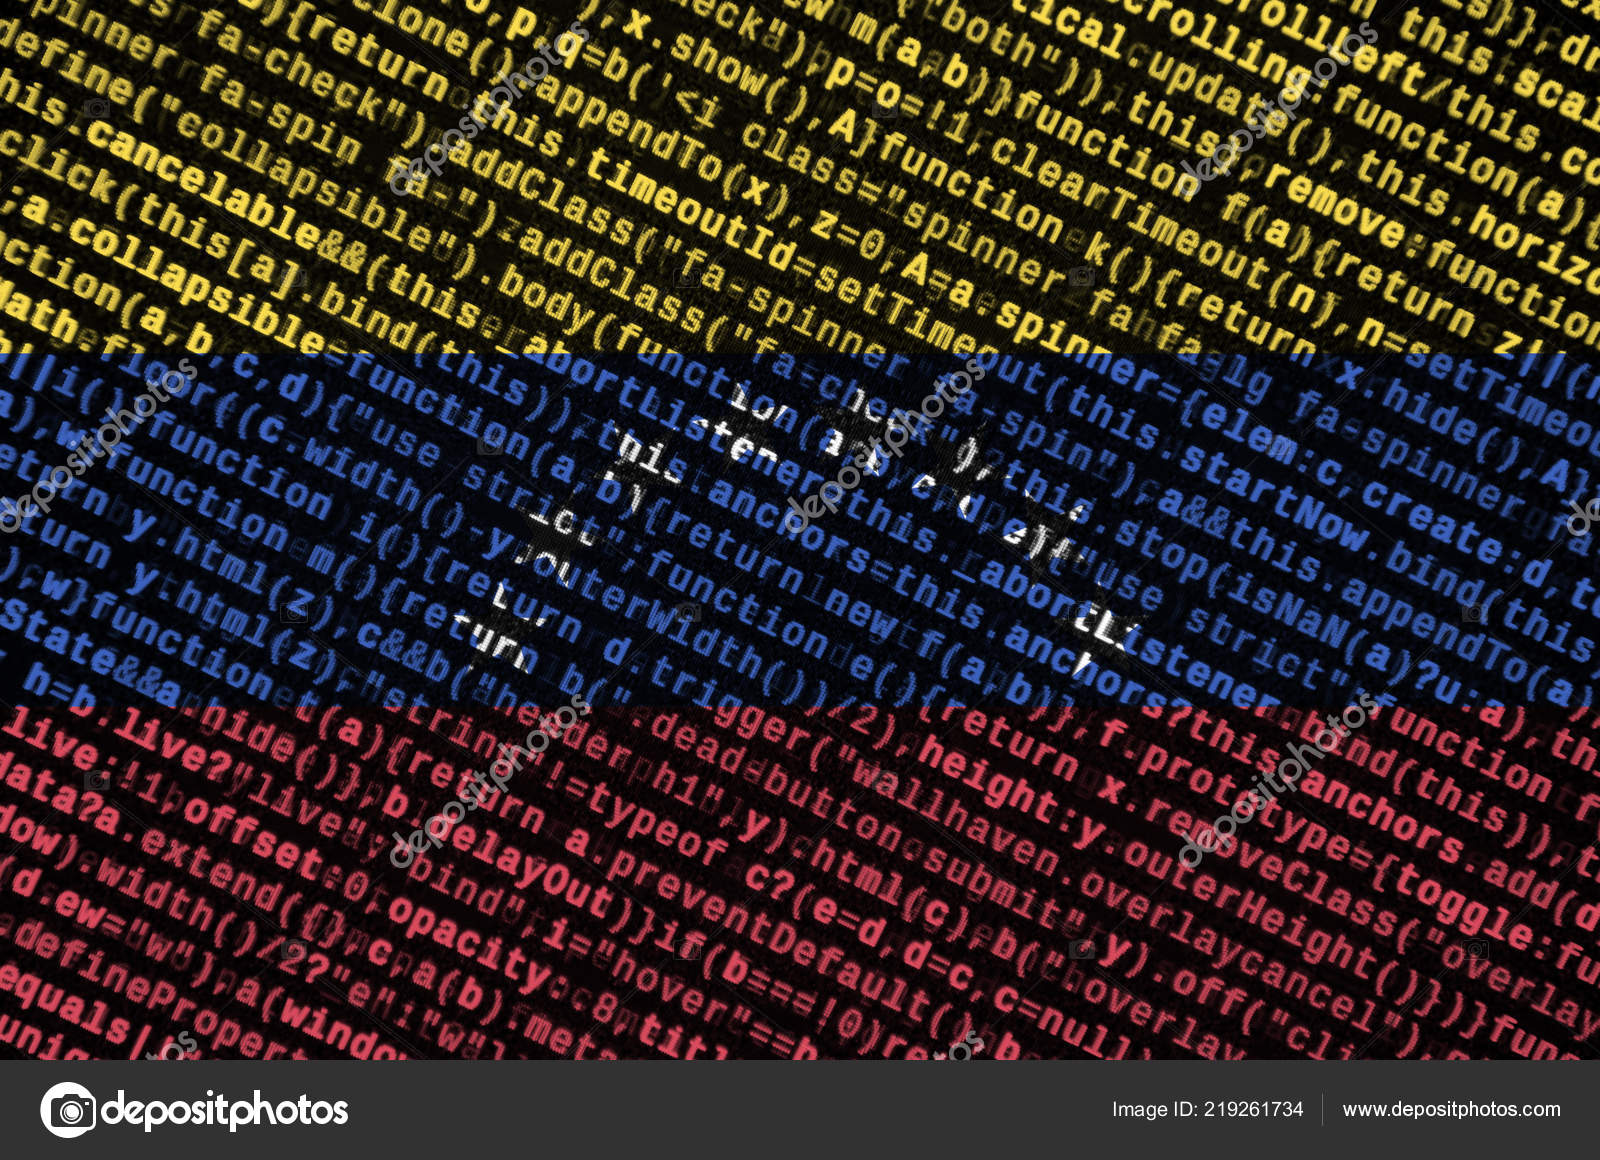 ベネズエラの国旗は プログラム コードと画面に描かれています 近代的な技術とサイト開発のコンセプト ストック写真 C Mehaniq